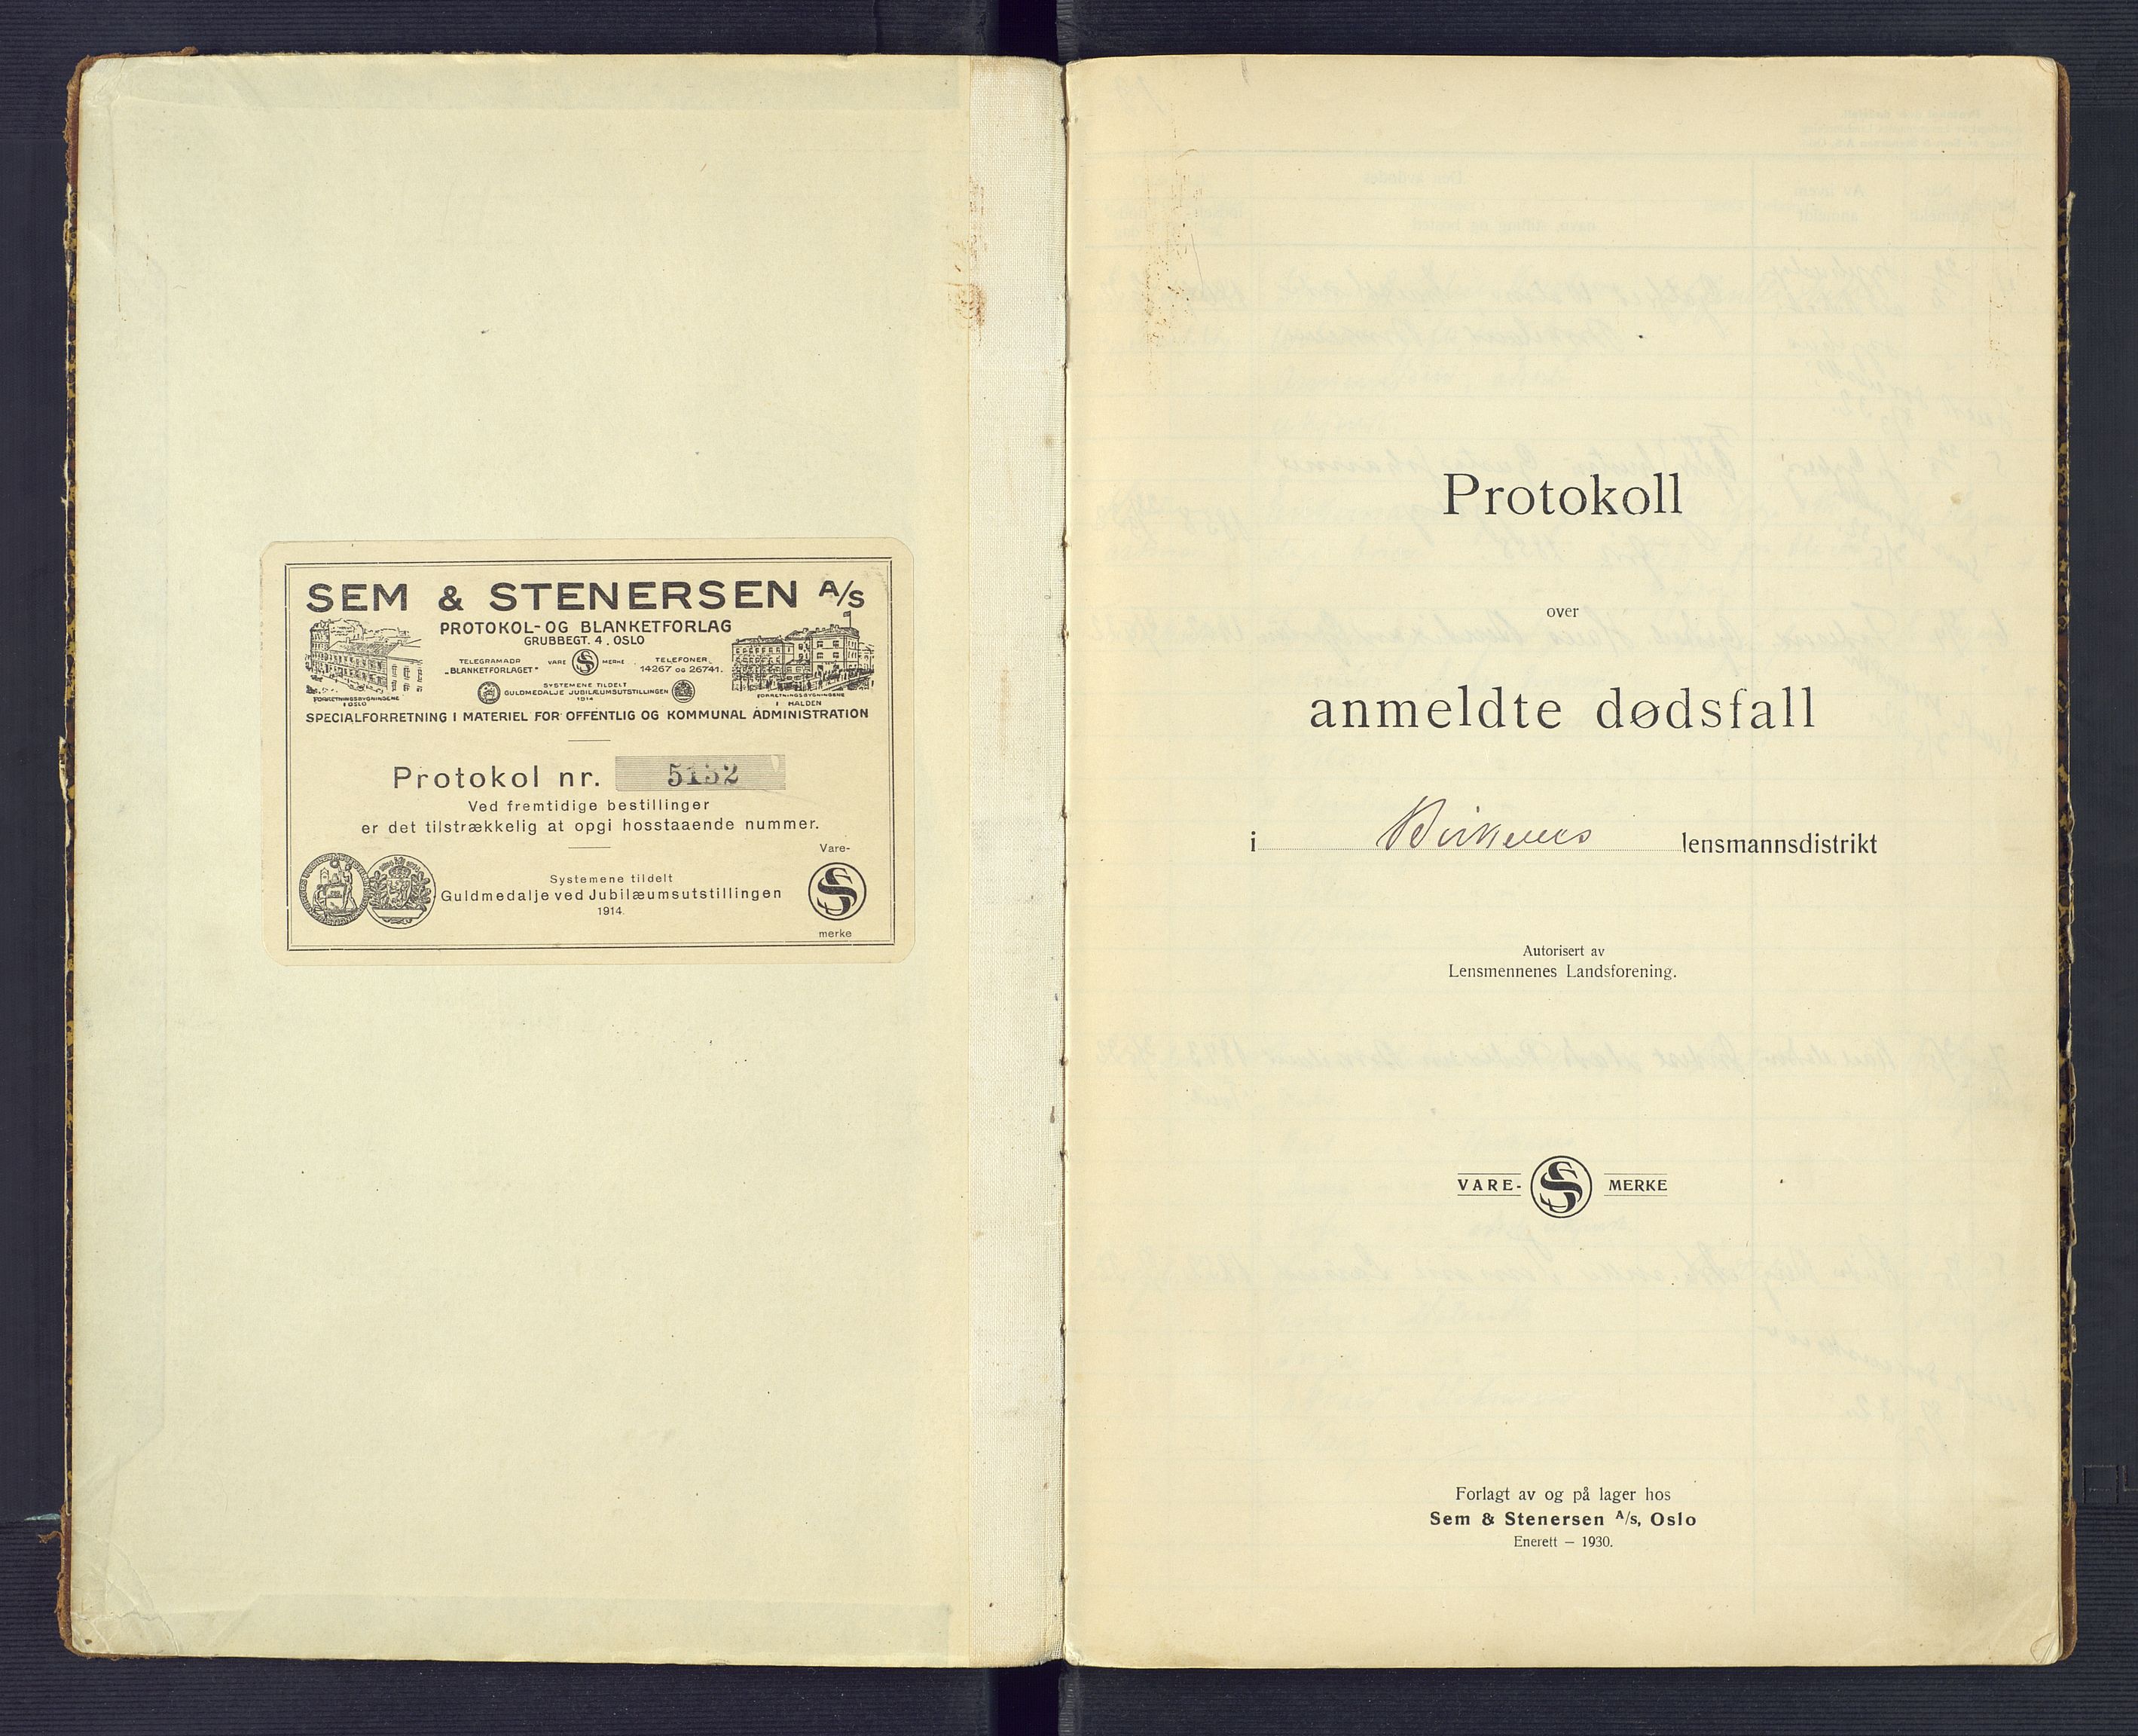 Birkenes lensmannskontor, SAK/1241-0004/F/Fe/L0001/0003: Dødsfallsprotokoller / Dødsfallsprotokoll, 1932-1944